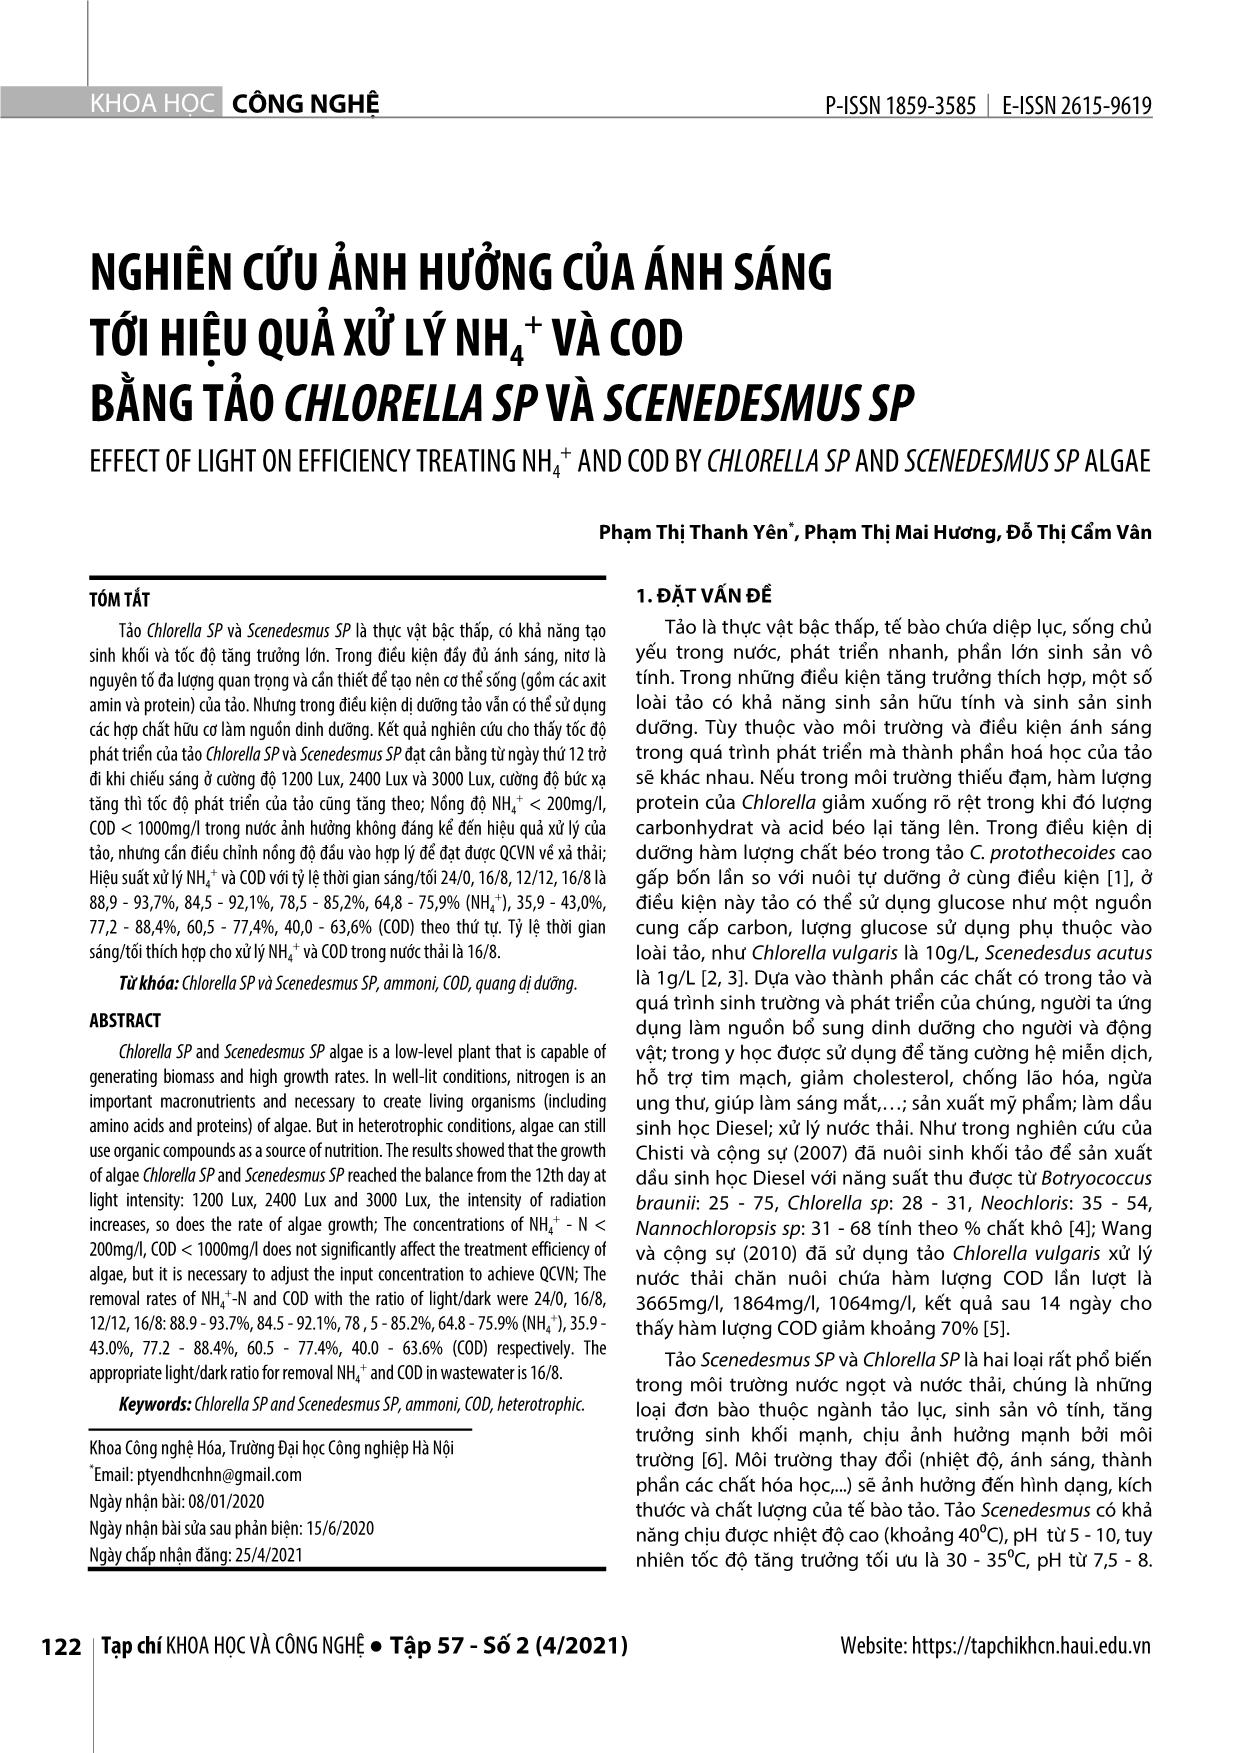 Nghiên cứu ảnh hưởng của ánh sáng tới hiệu quả xử lý NH₄⁺ và cod bằng tảo Chlorella SP và Scenedesmus SP trang 1